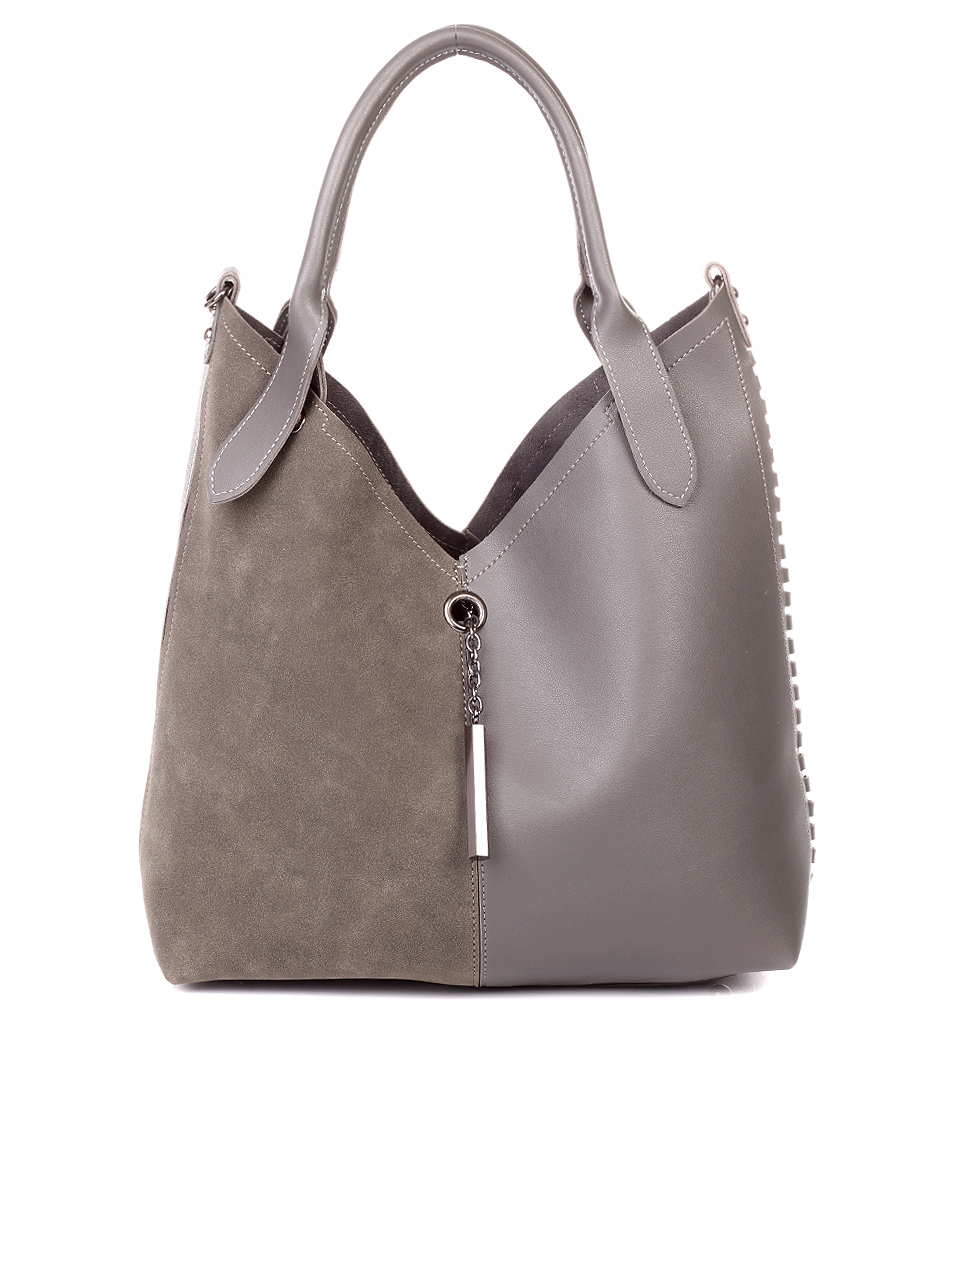 Taupe Brown Leather Tote, Hobo Handbag, Buckle Tote, Tan Leather Handbag, Tan Purse, Leather Purse. Fall-winter 2014/2015 Handbags.